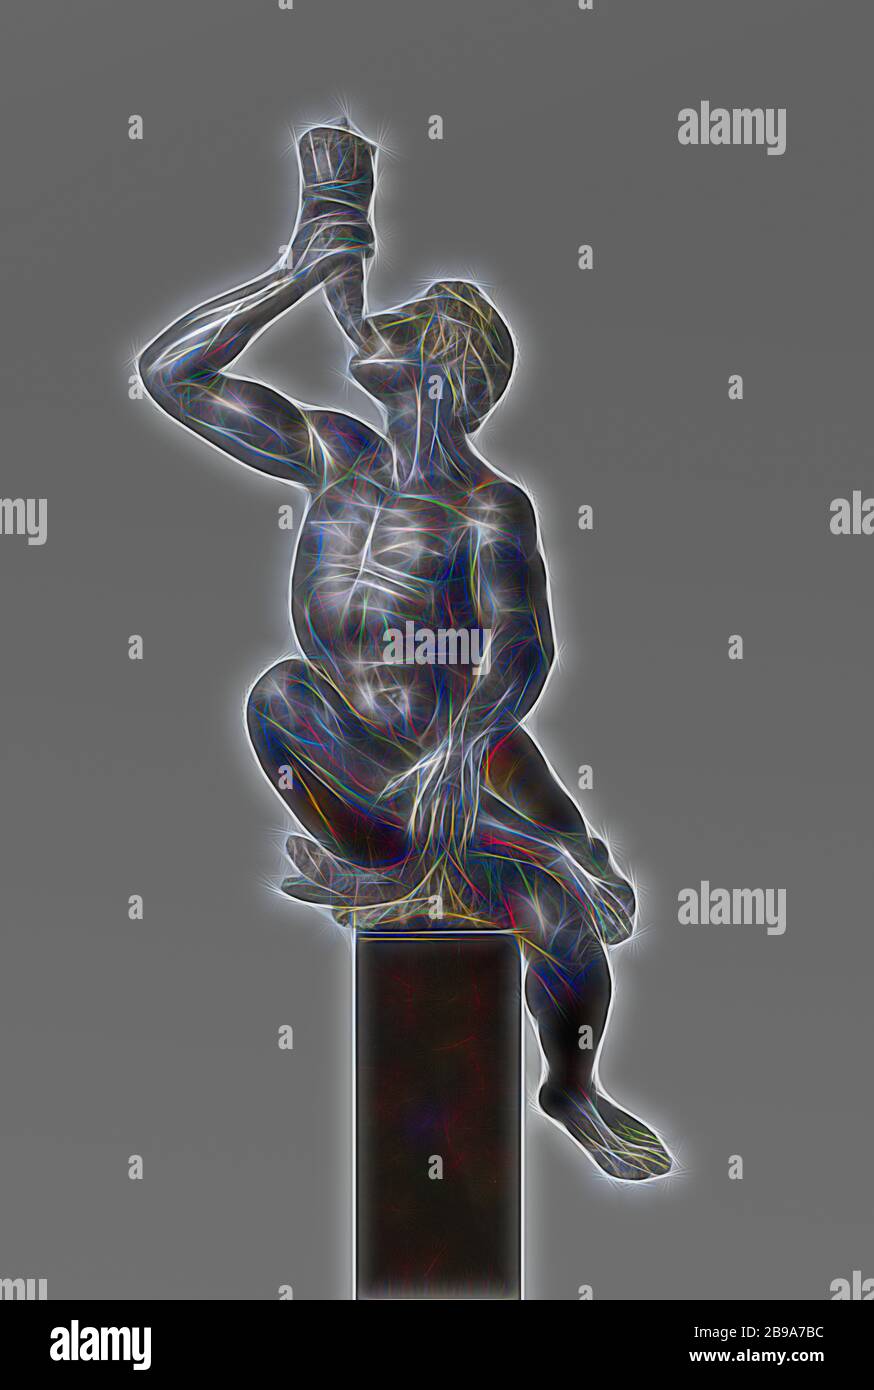 Triton soufflant d'une coquille de Conch Triton, soufflant sur une coquille, Triton, assis, avec la jambe droite traversée sur la jambe gauche et soufflant sur une coquille., Adriaen de Vries, Praag, c. 1615 - c. 1618, bronze (métal), h 157 cm × h 225 cm × l 88 cm × d 80 cm l 55.8 cm × d 56 cm, repensé par Gibon, design de lumière chaude et gaie, rayonnant de luminosité et de rayons de lumière. L'art classique réinventé avec une touche moderne. Photographie inspirée par le futurisme, embrassant l'énergie dynamique de la technologie moderne, le mouvement, la vitesse et révolutionnez la culture. Banque D'Images